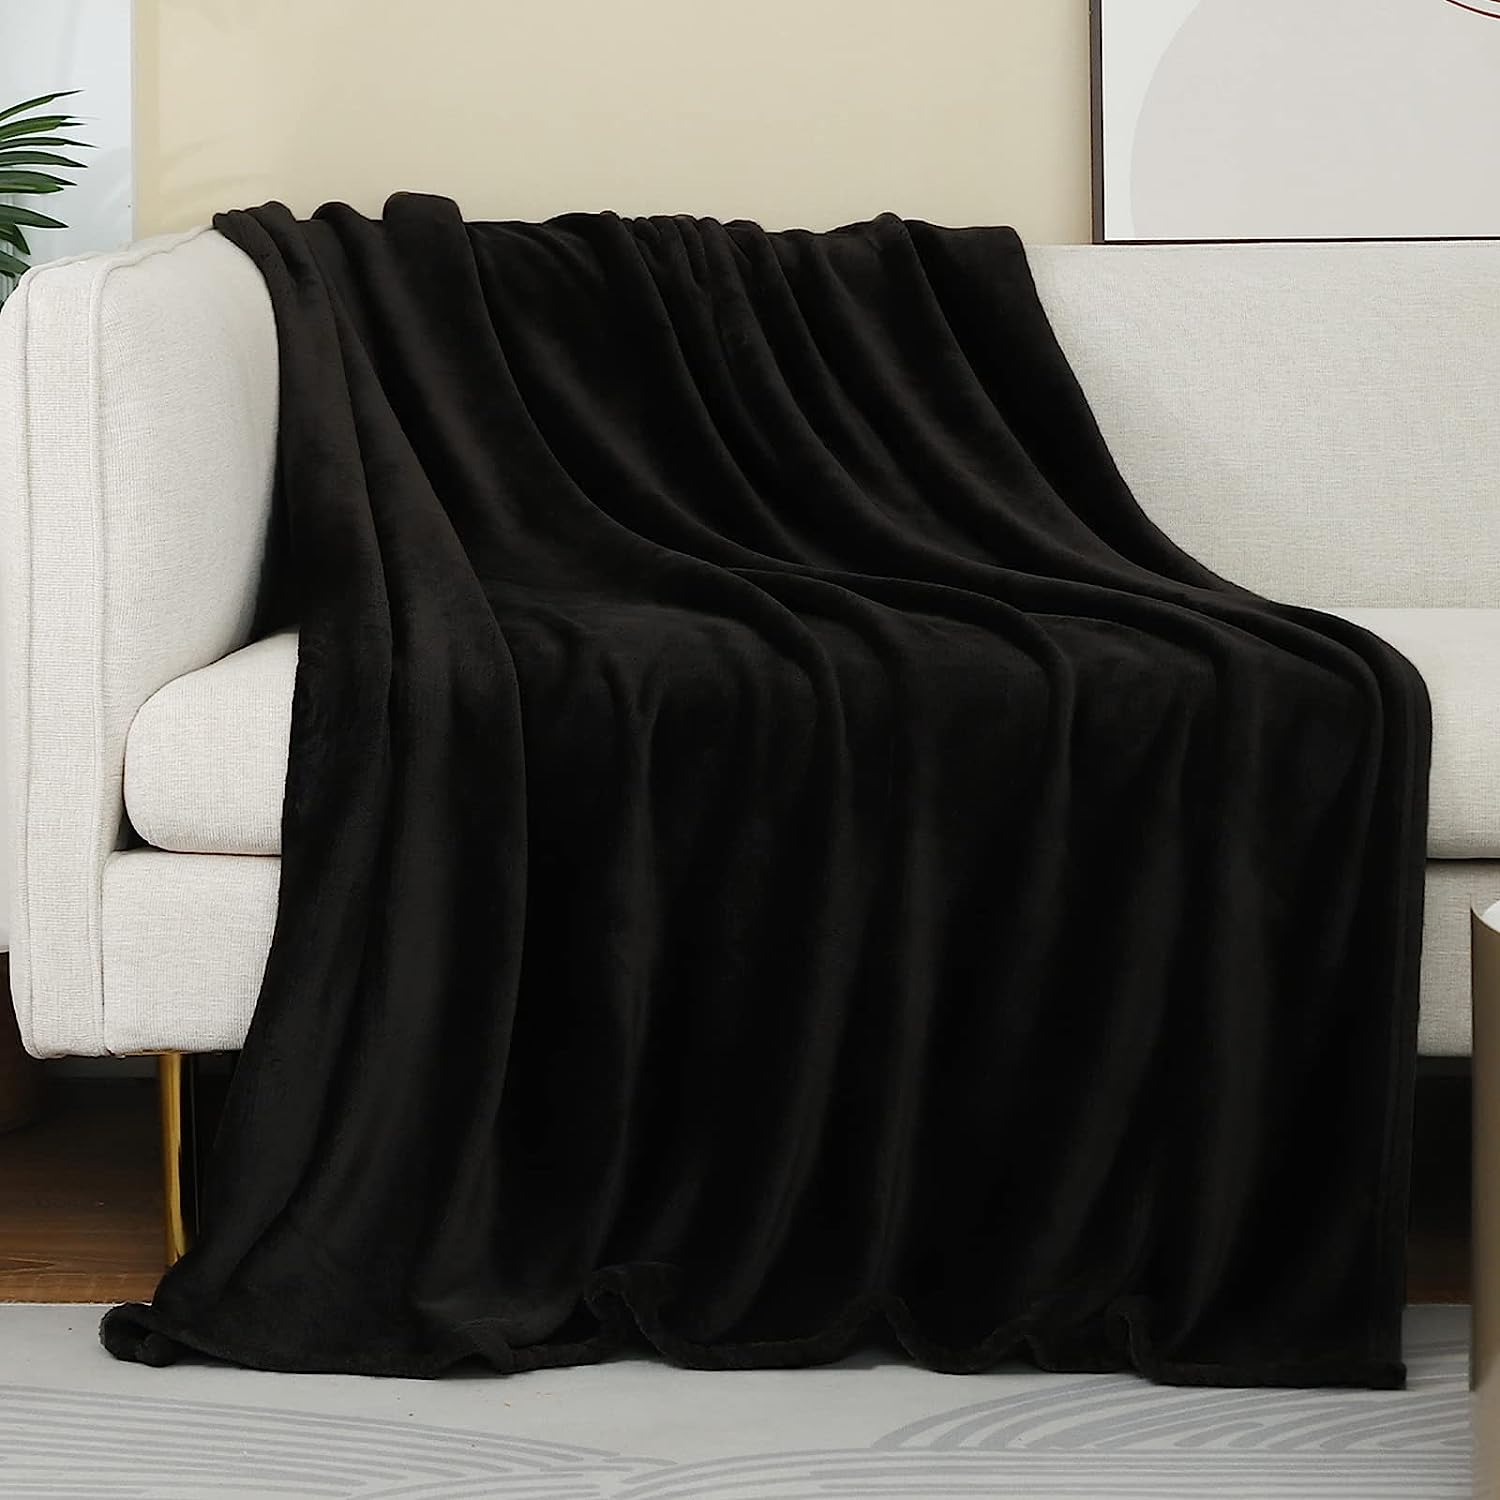 Manta negra de forro polar (50x60 pulgadas), manta de felpa